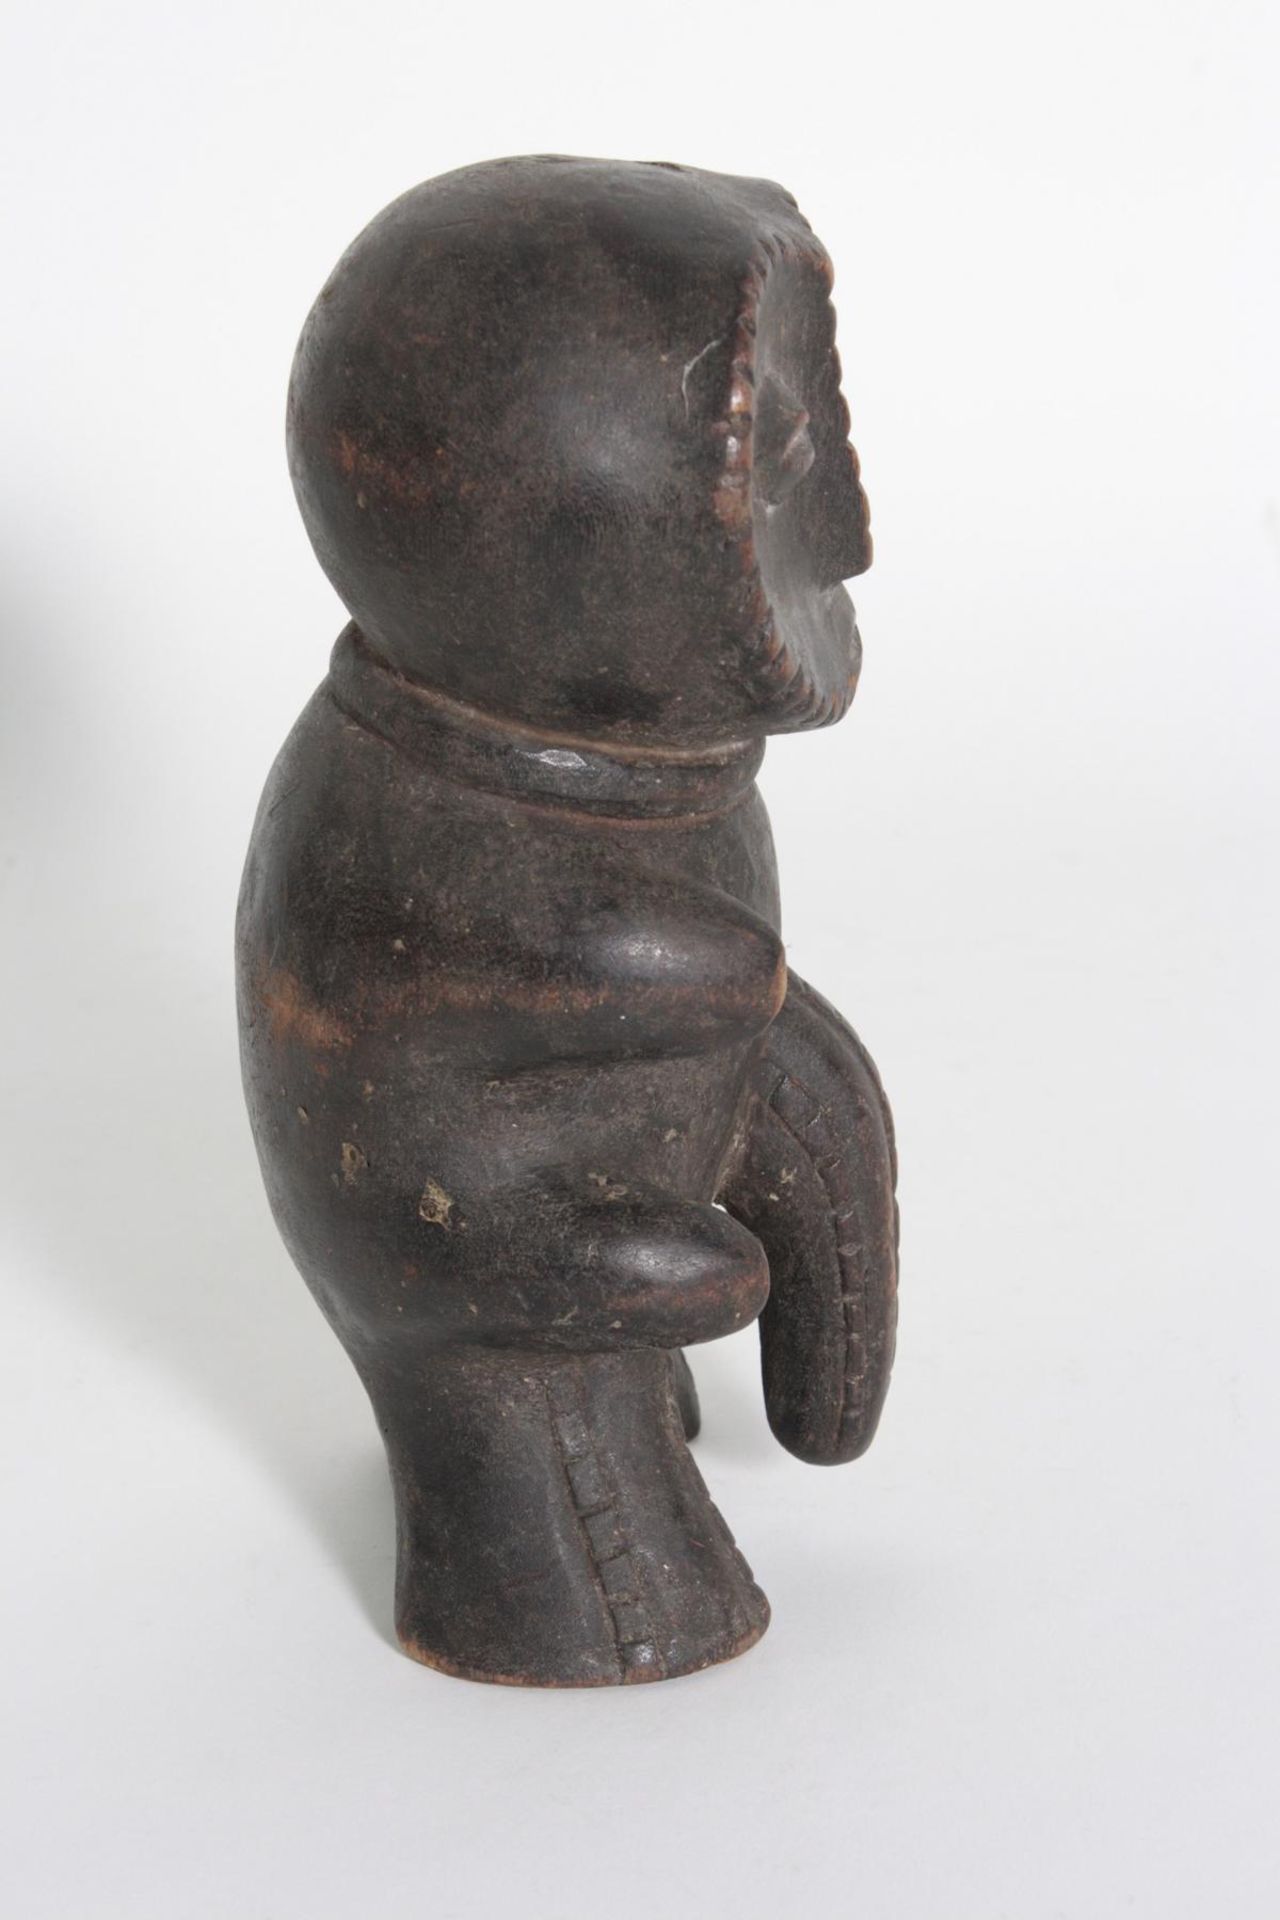 Fetischfigur wohl Ngbaka, D. R, Kongo, 1. Hälfte 20. Jh.Holz, geschnitzt, dunkle Krustenpatina, - Bild 2 aus 4